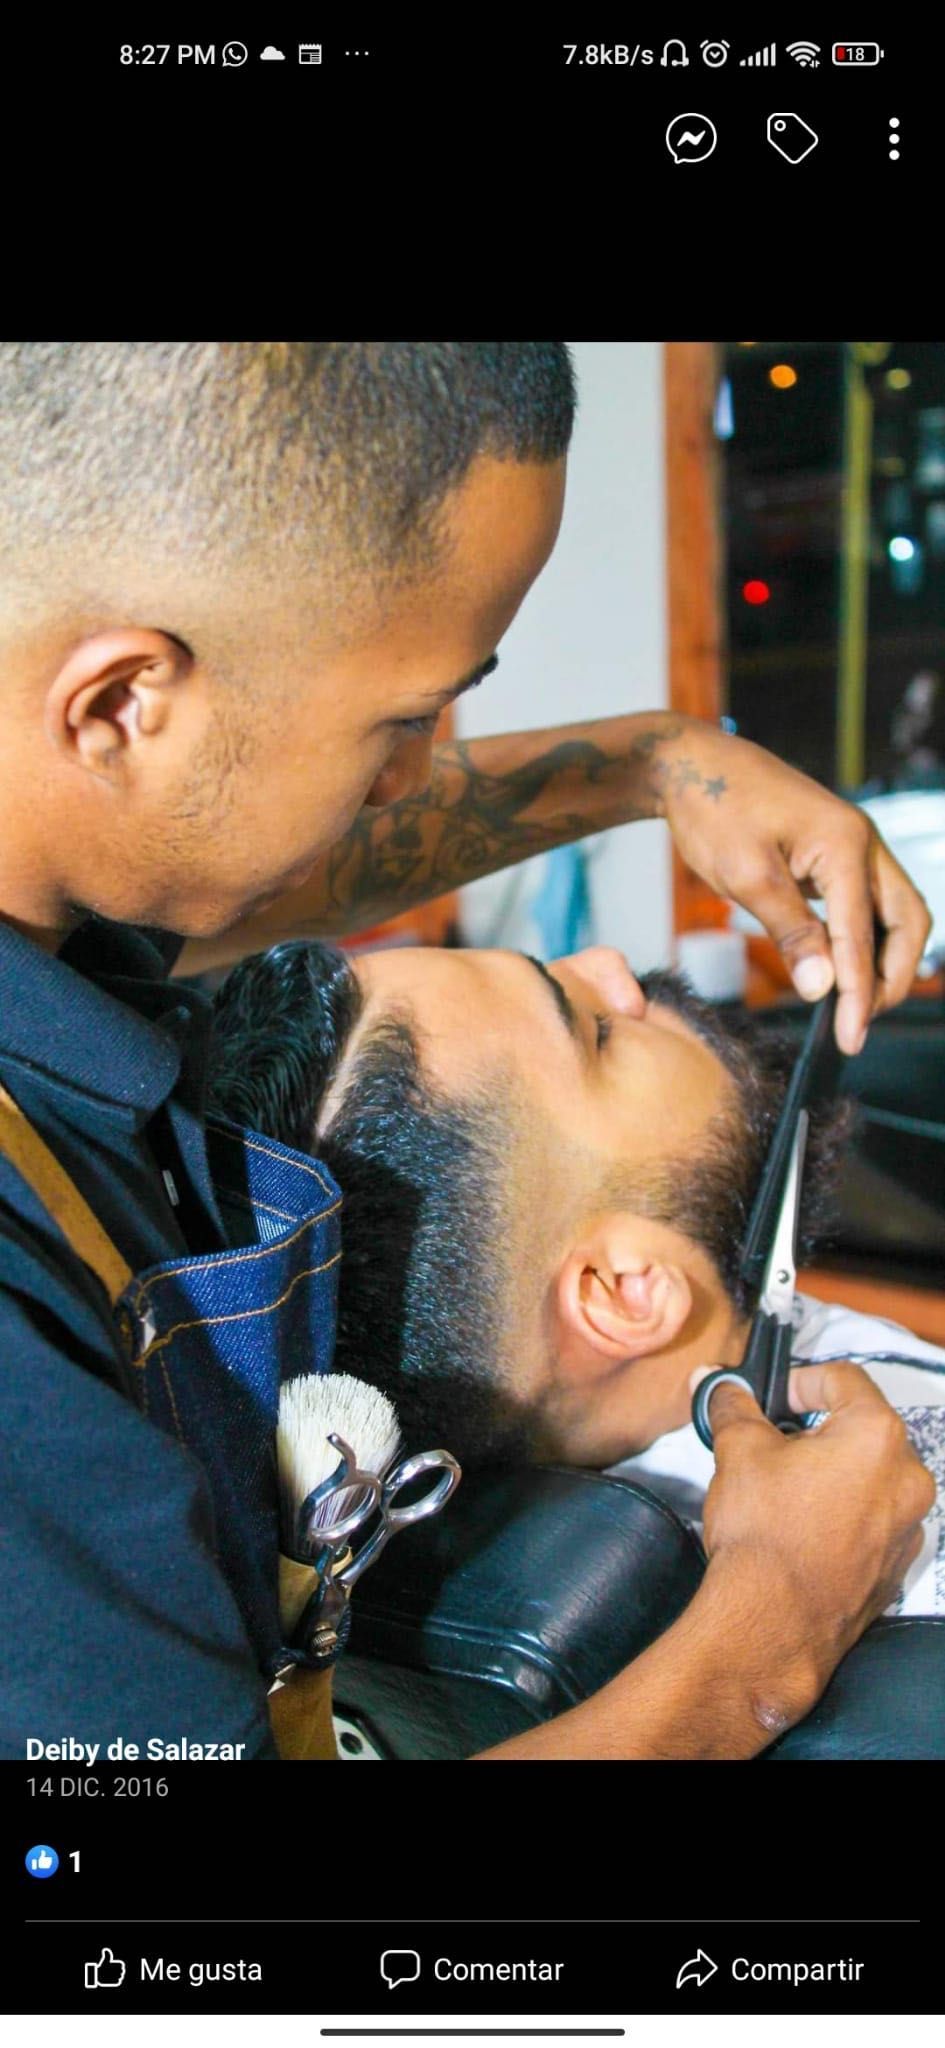 Deiby Barber - Barber Shop 2.0 ✂️